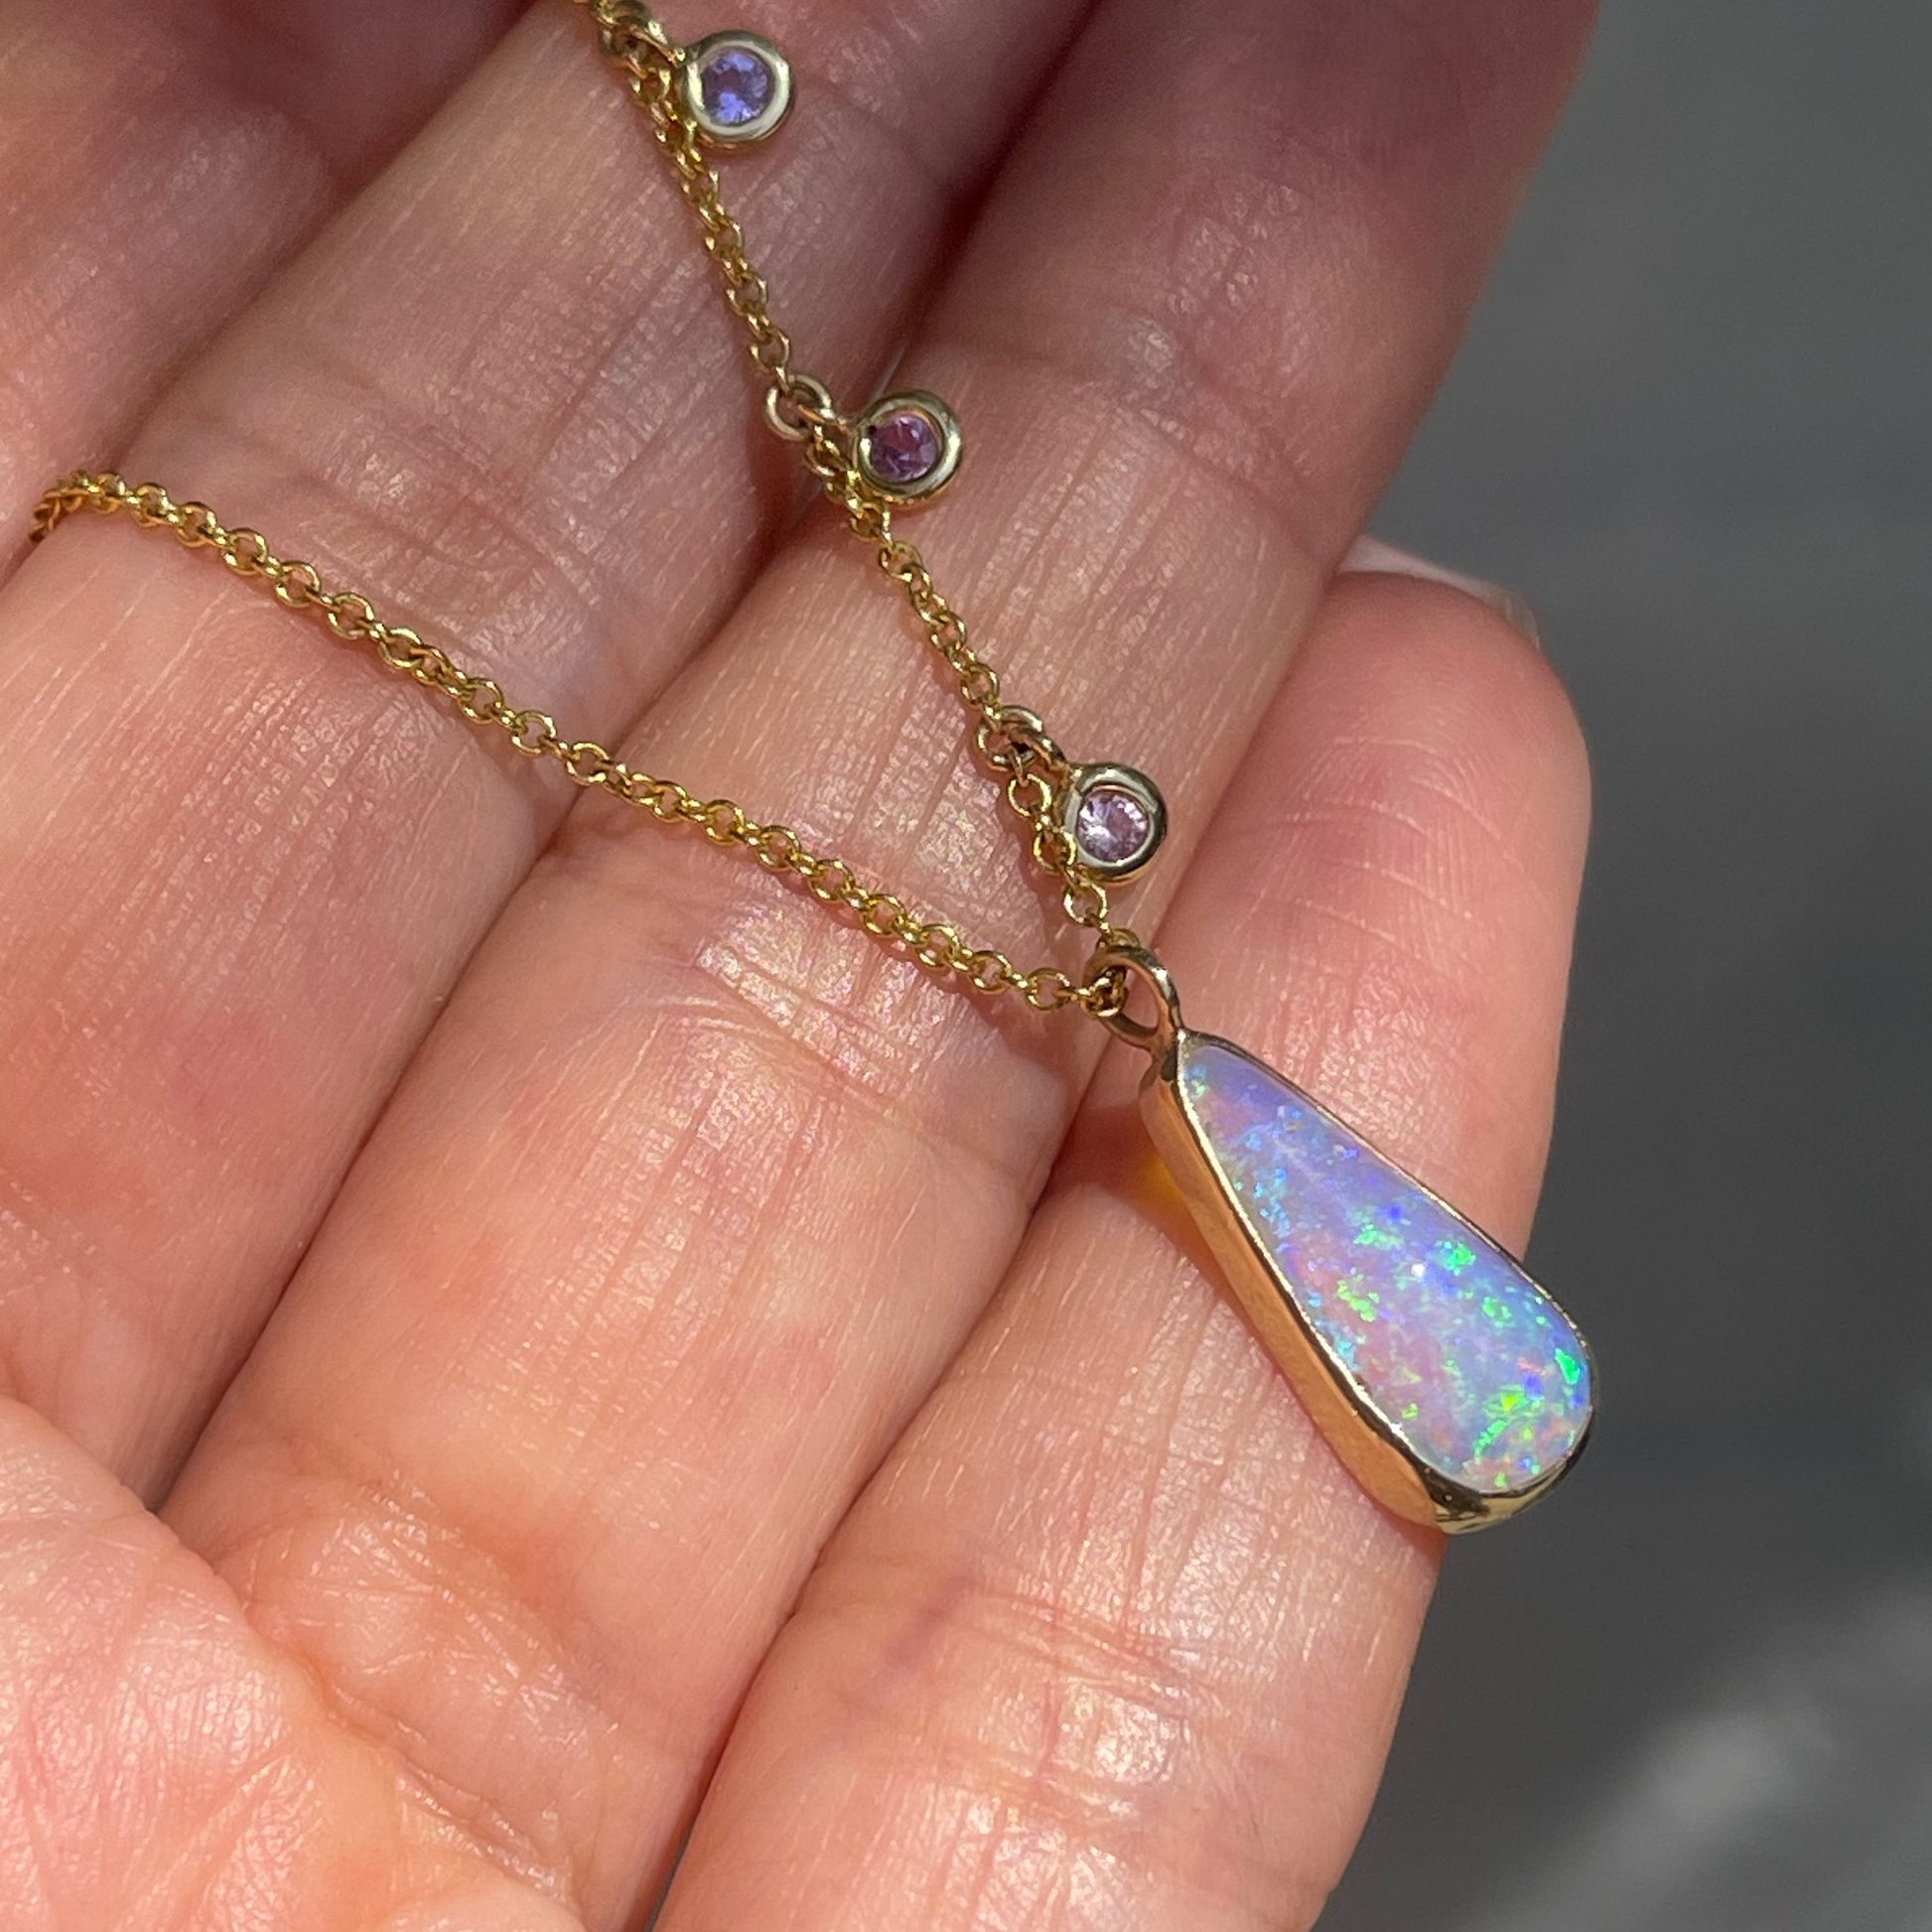 Australian Opal Necklace by NIXIN Jewelry resting on palm. Side of opal pendant showing bezel edge.